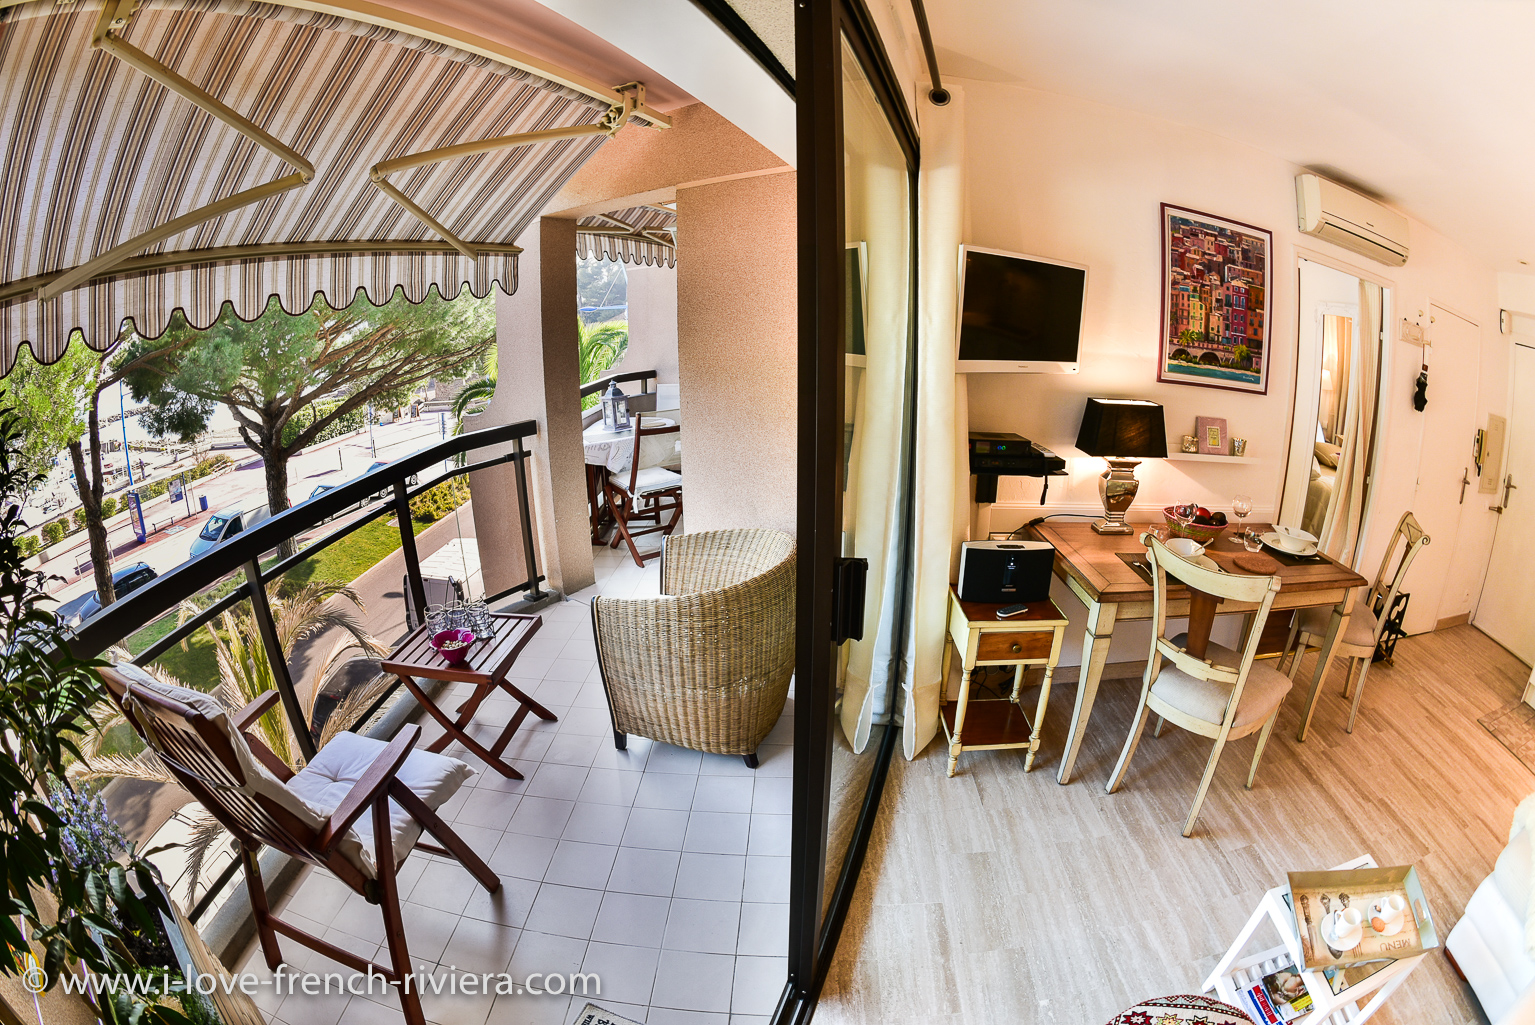 L'intérieur notre appartement de vacances communique avec une belle terrasse couverte de 12 m2 qui fait face à la mer et offre une magnifique vue.